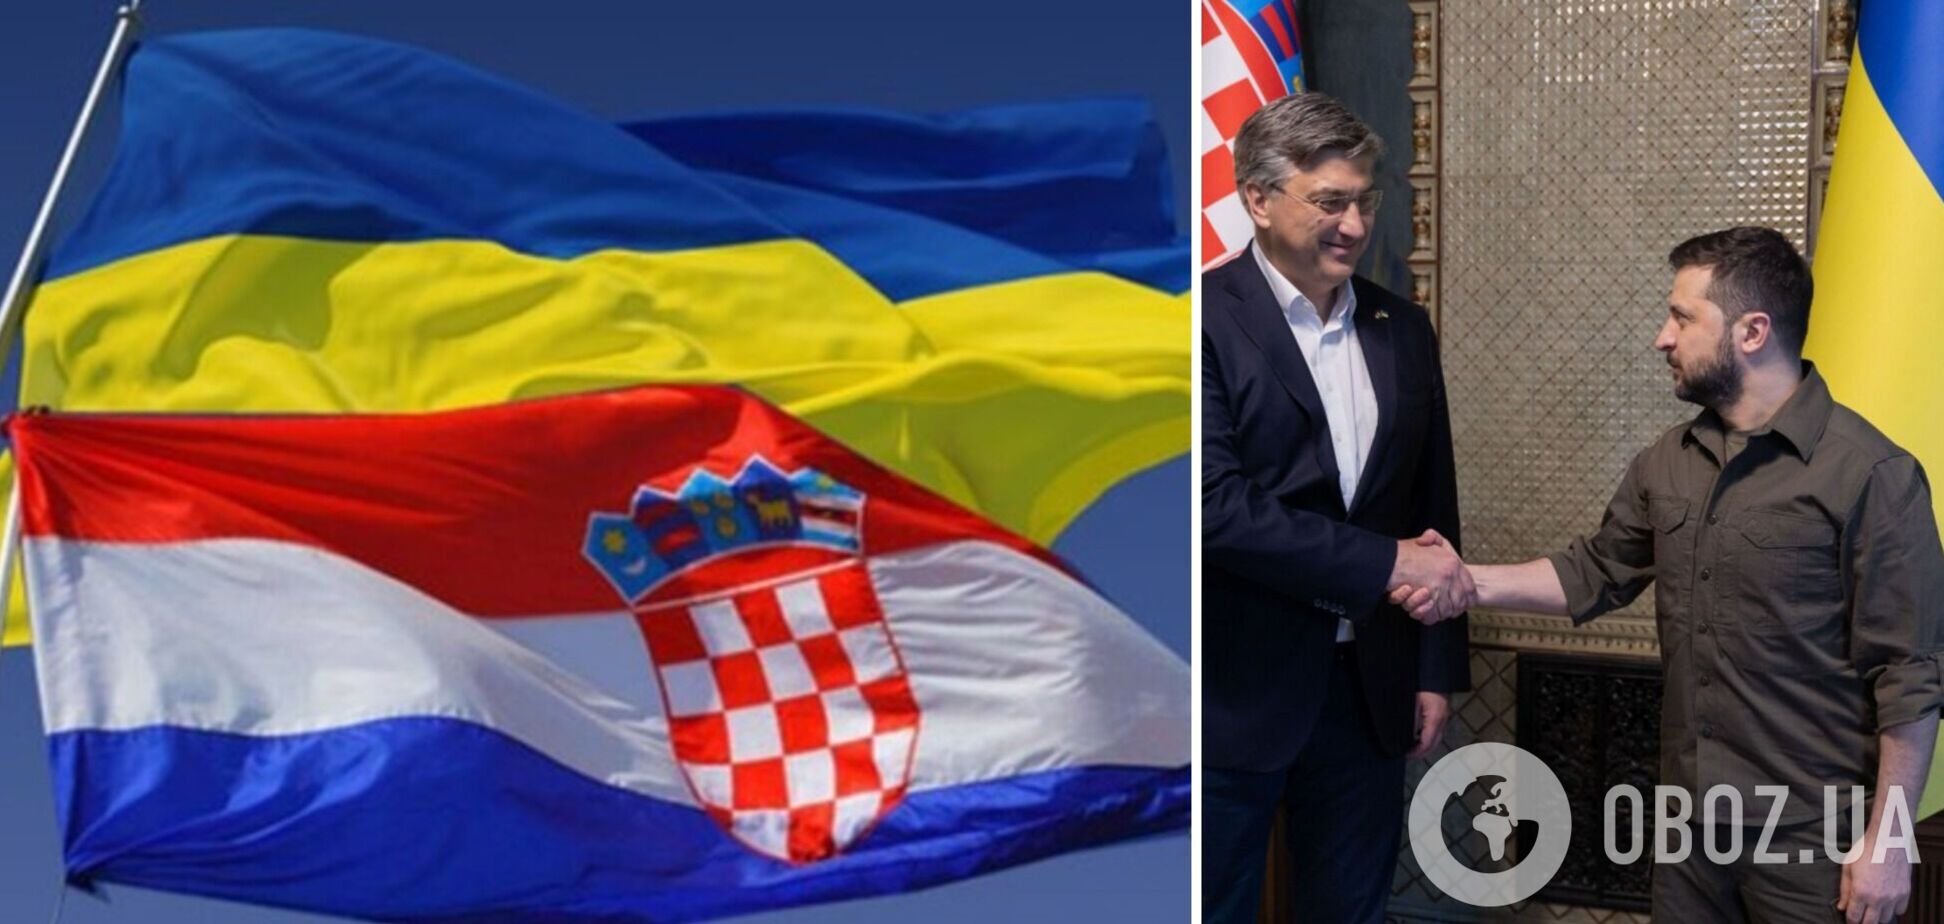 Хорватия выделит Украине новый пакет военной помощи на €30 млн: что известно